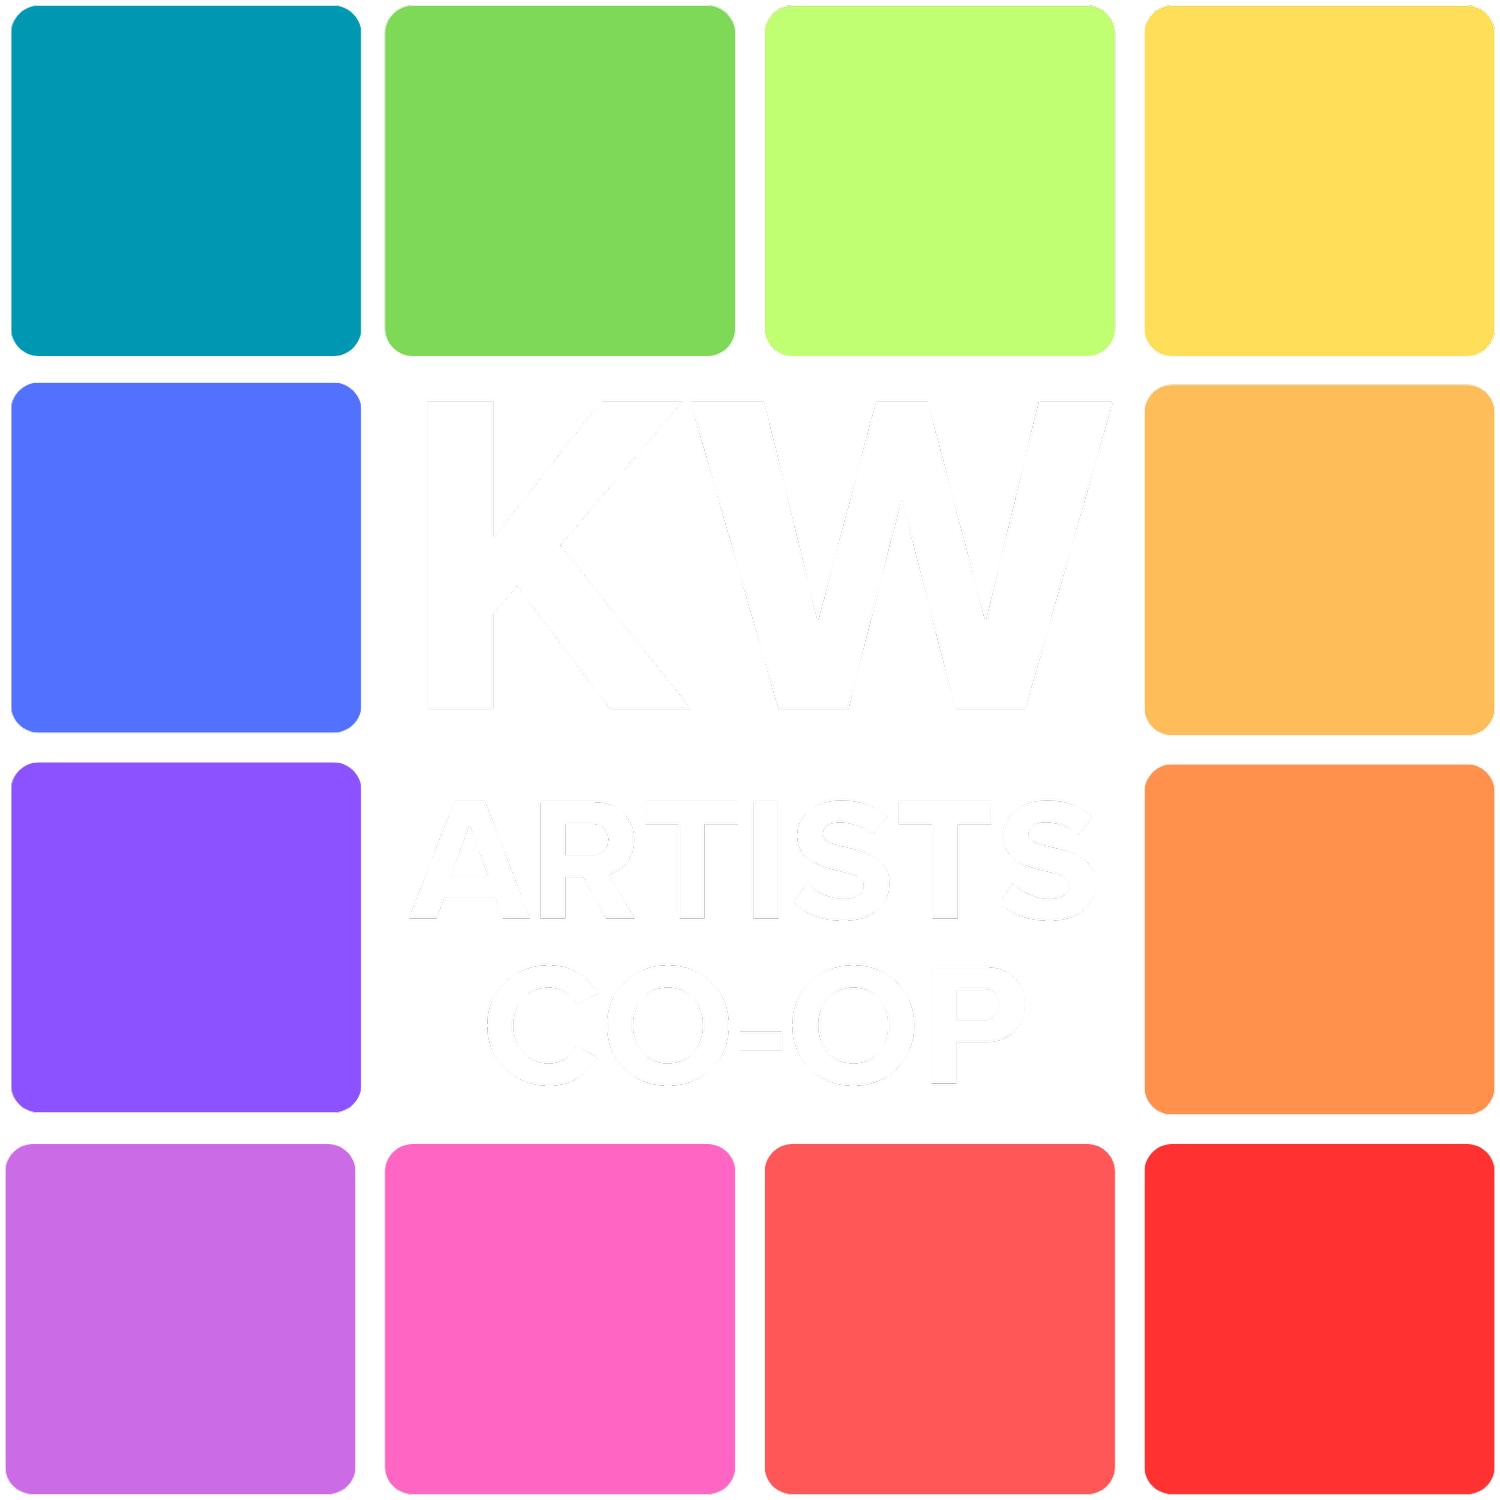 KW Artists Co-op